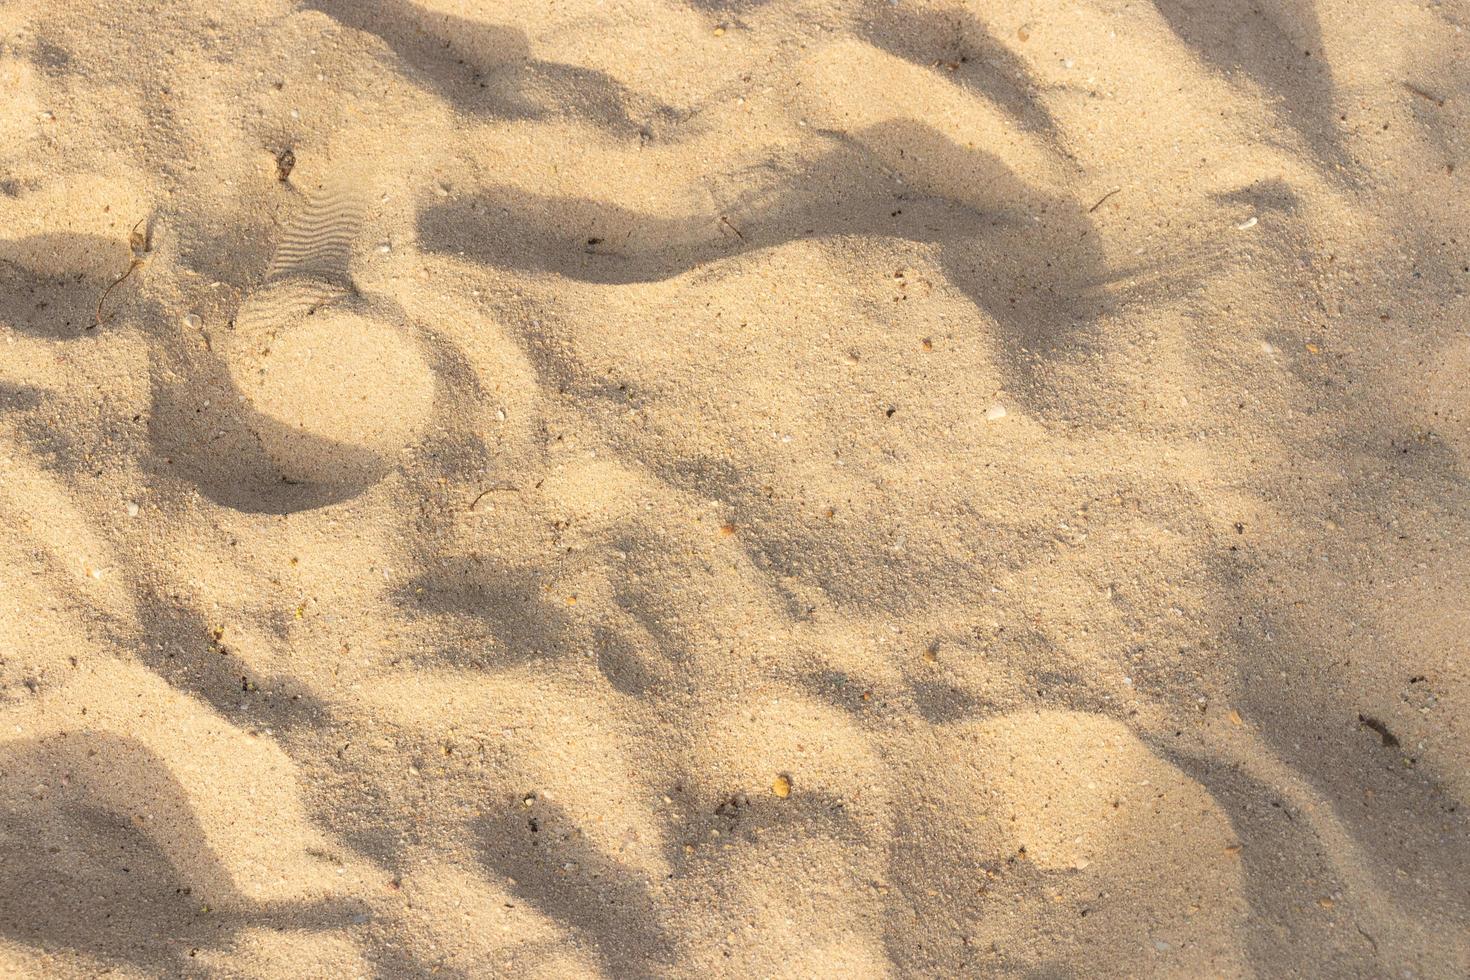 sand på strandstrukturen för sommarbakgrund foto